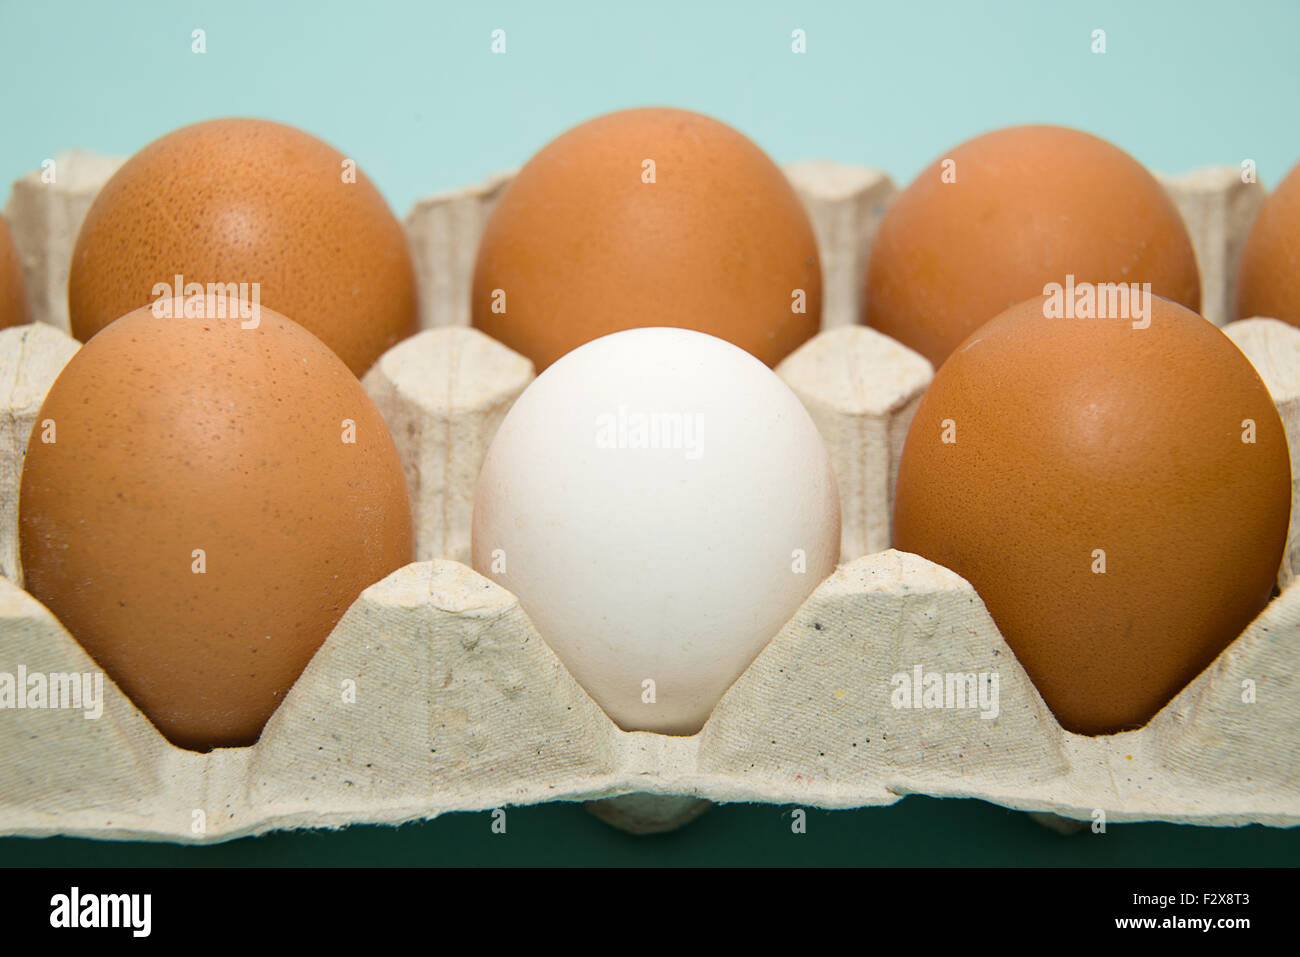 Uova di gallina di diversi colori nella confezione su blu Foto Stock